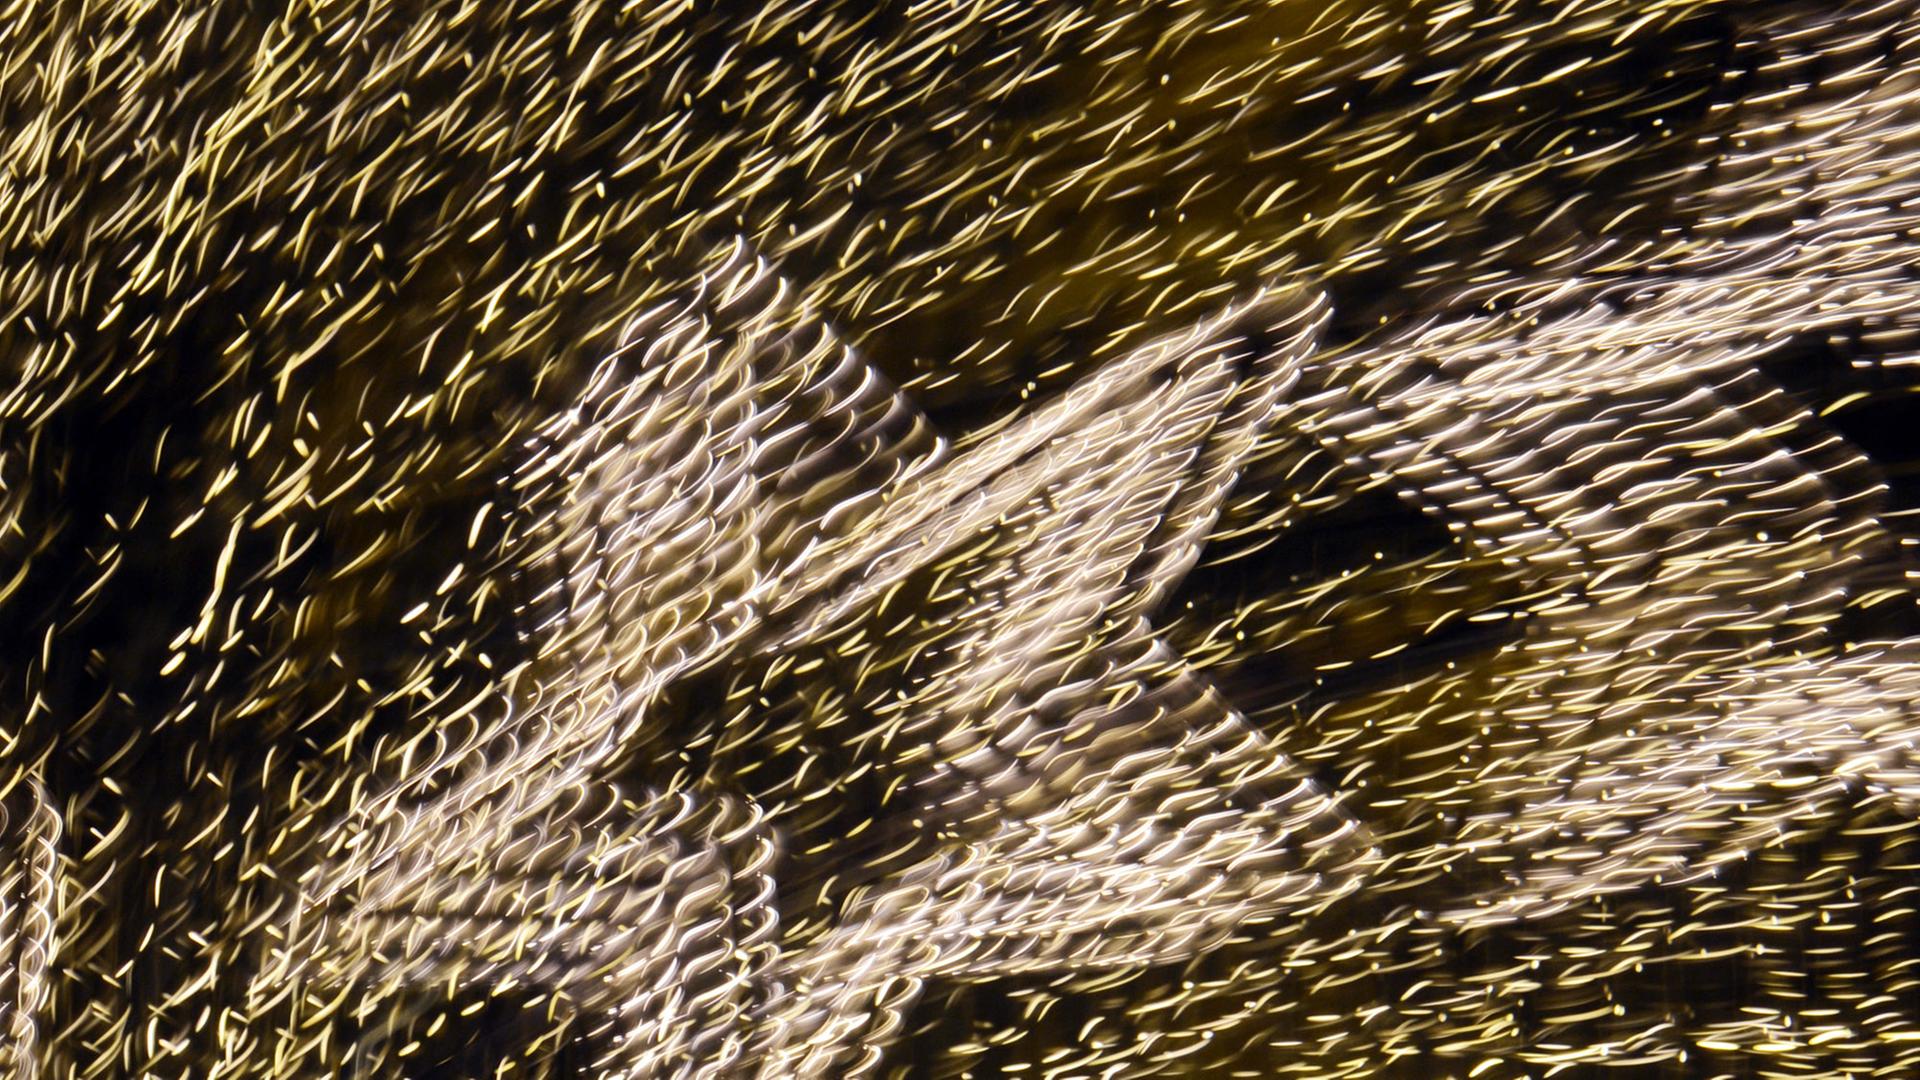 Illustration - Sterne aus Lichterketten und weitere Lichter hängen am 12.12.2012 in Berlin an den Potsdamer Platz Arkaden. (Wischeffekt durch Langzeitbelichtung.)